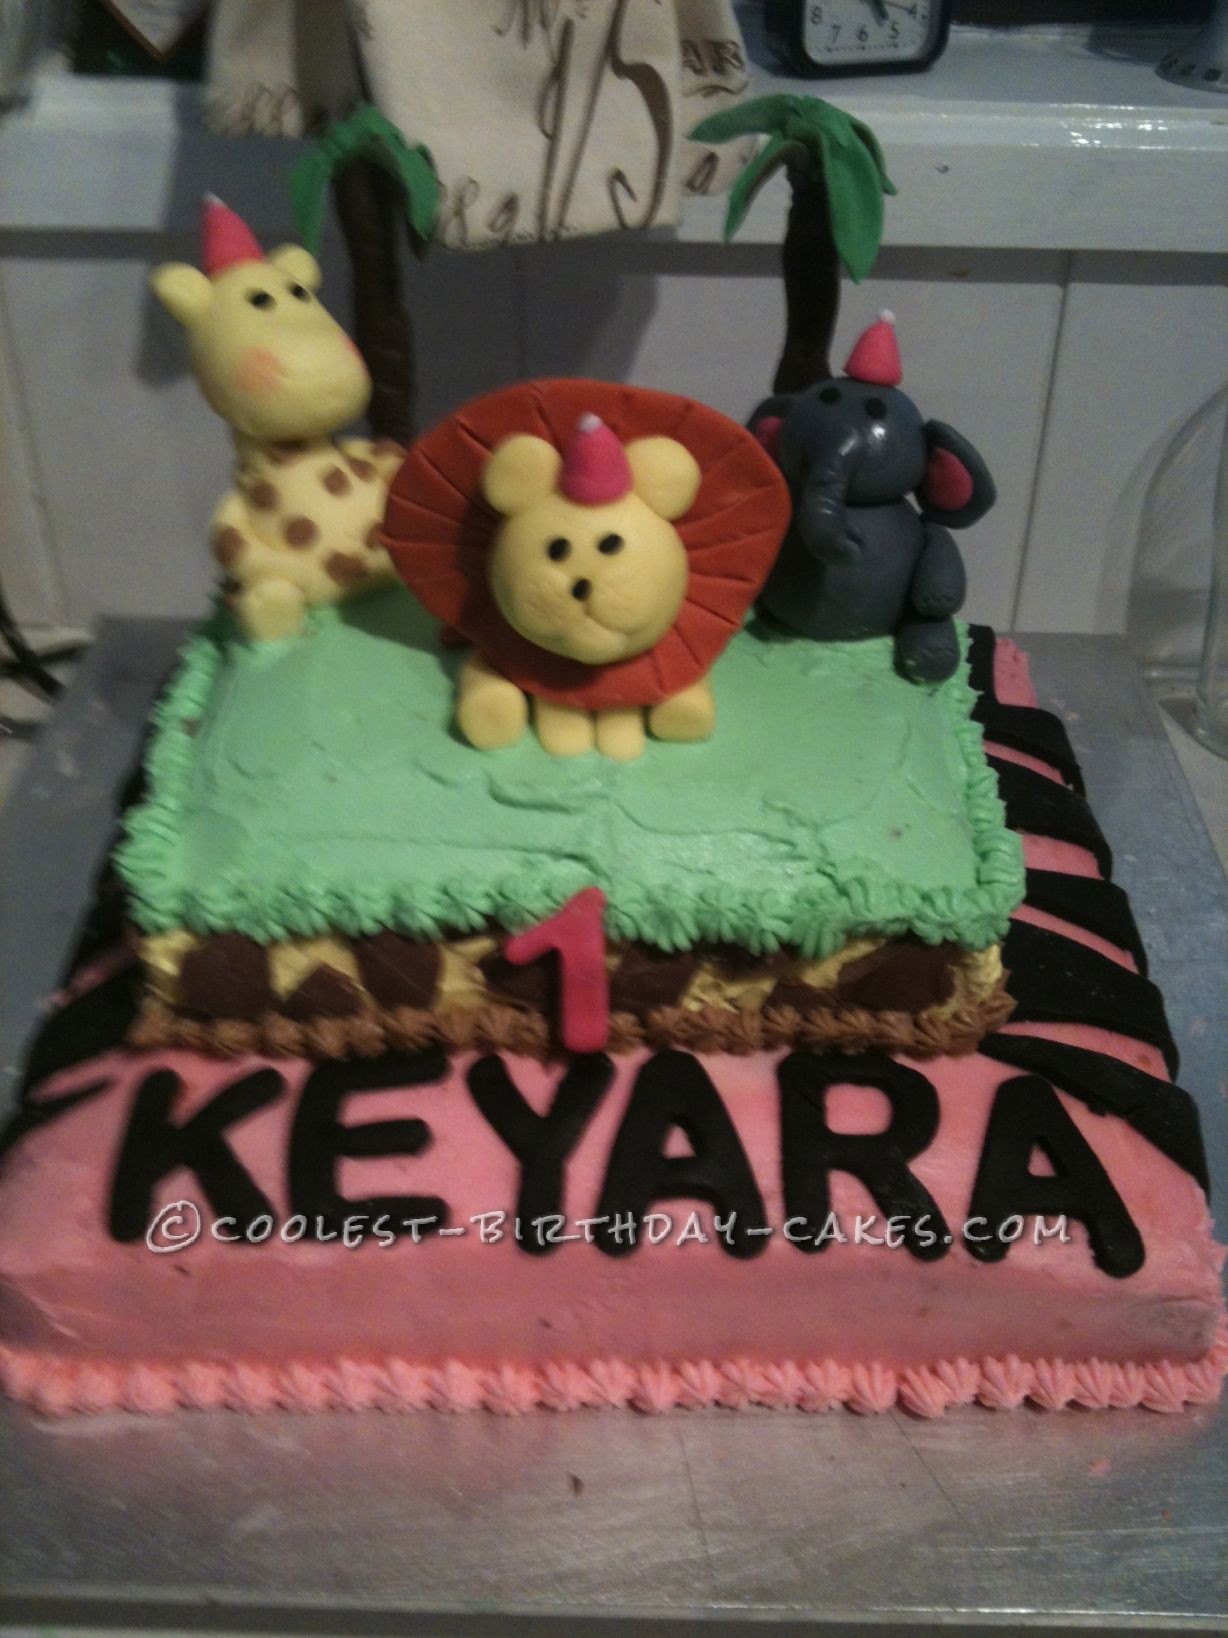 Cool African Jungle Safari Birthday Cake